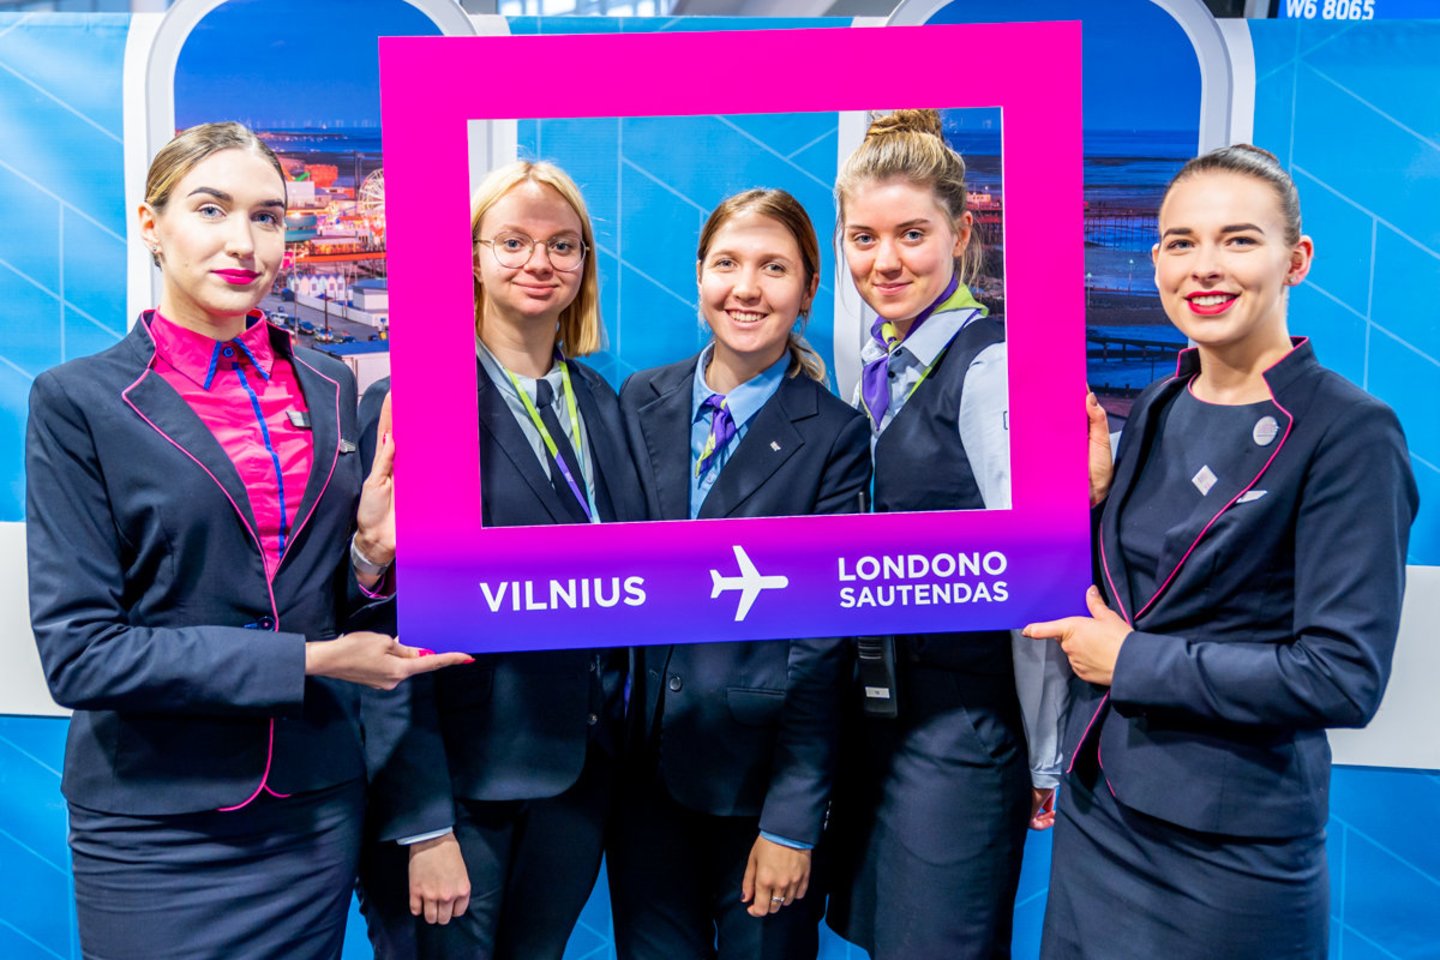  Šį šeštadienį skrydžių bendrovė pradėjo skrydžius nauja kryptimi iš Vilniaus į Londono Sautendo oro uostą. <br> Bendrovės nuotr.